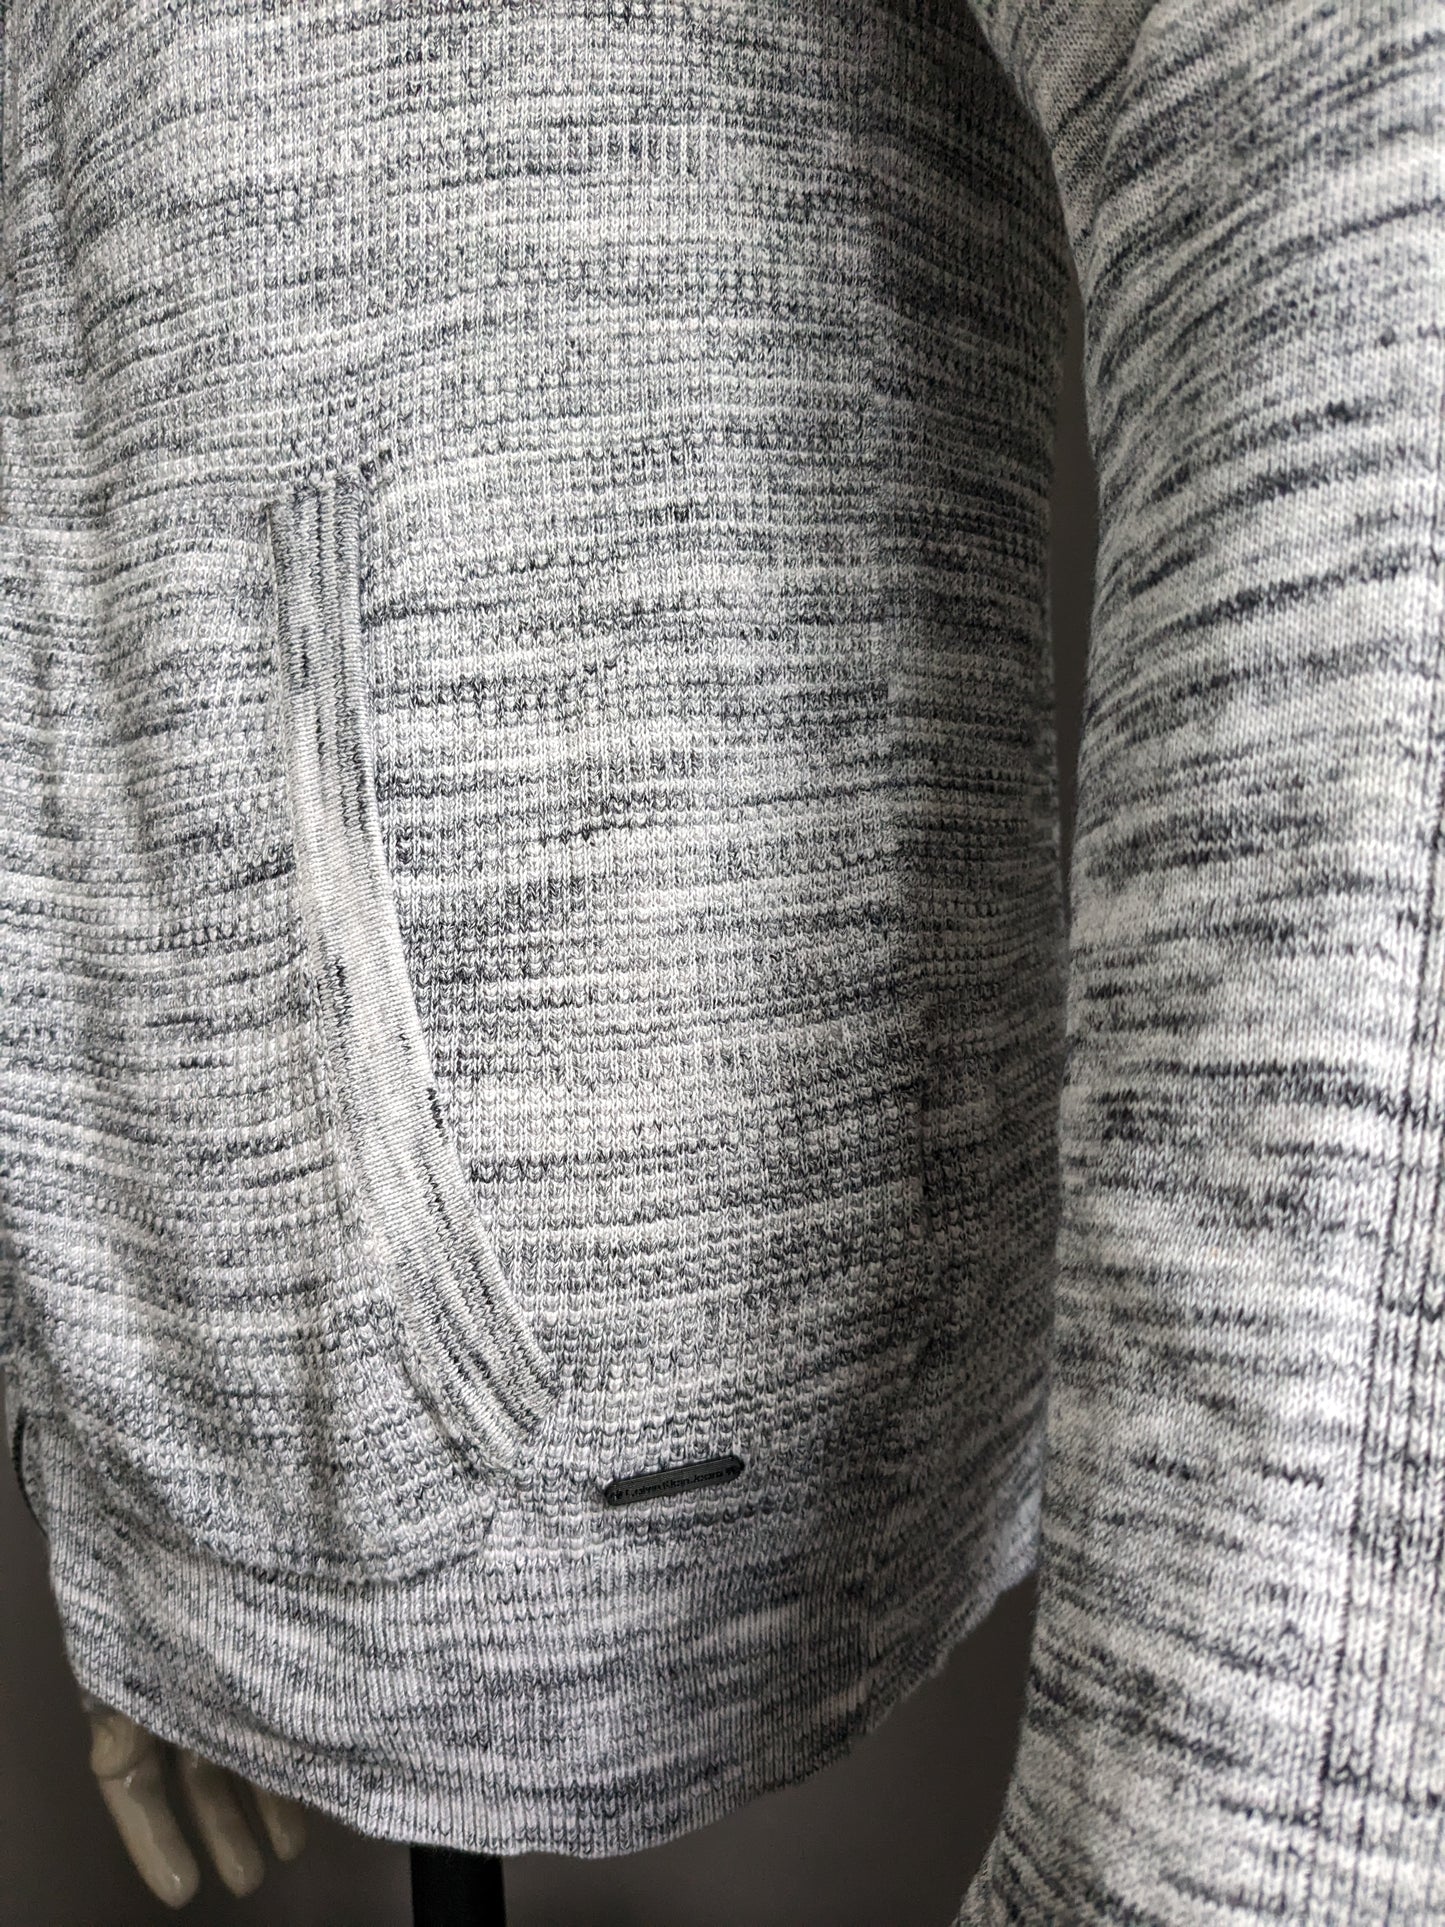 Calvin Klein Vest. Bianco grigio miscelato. Taglia L.